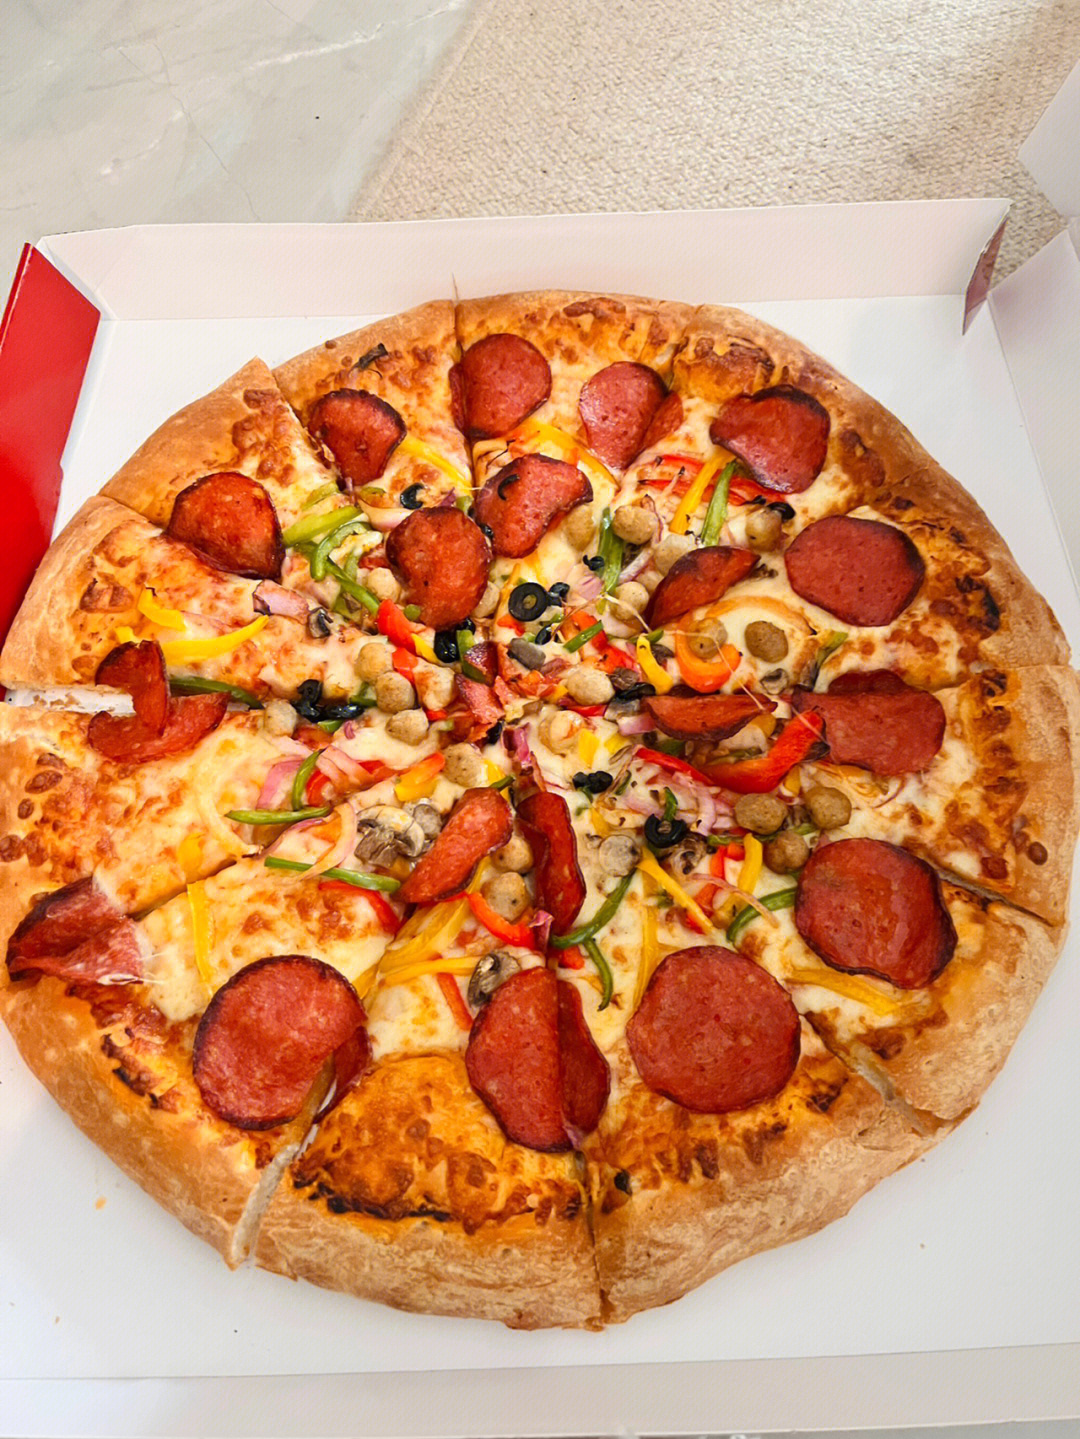 可口的披萨笑脸披萨图片